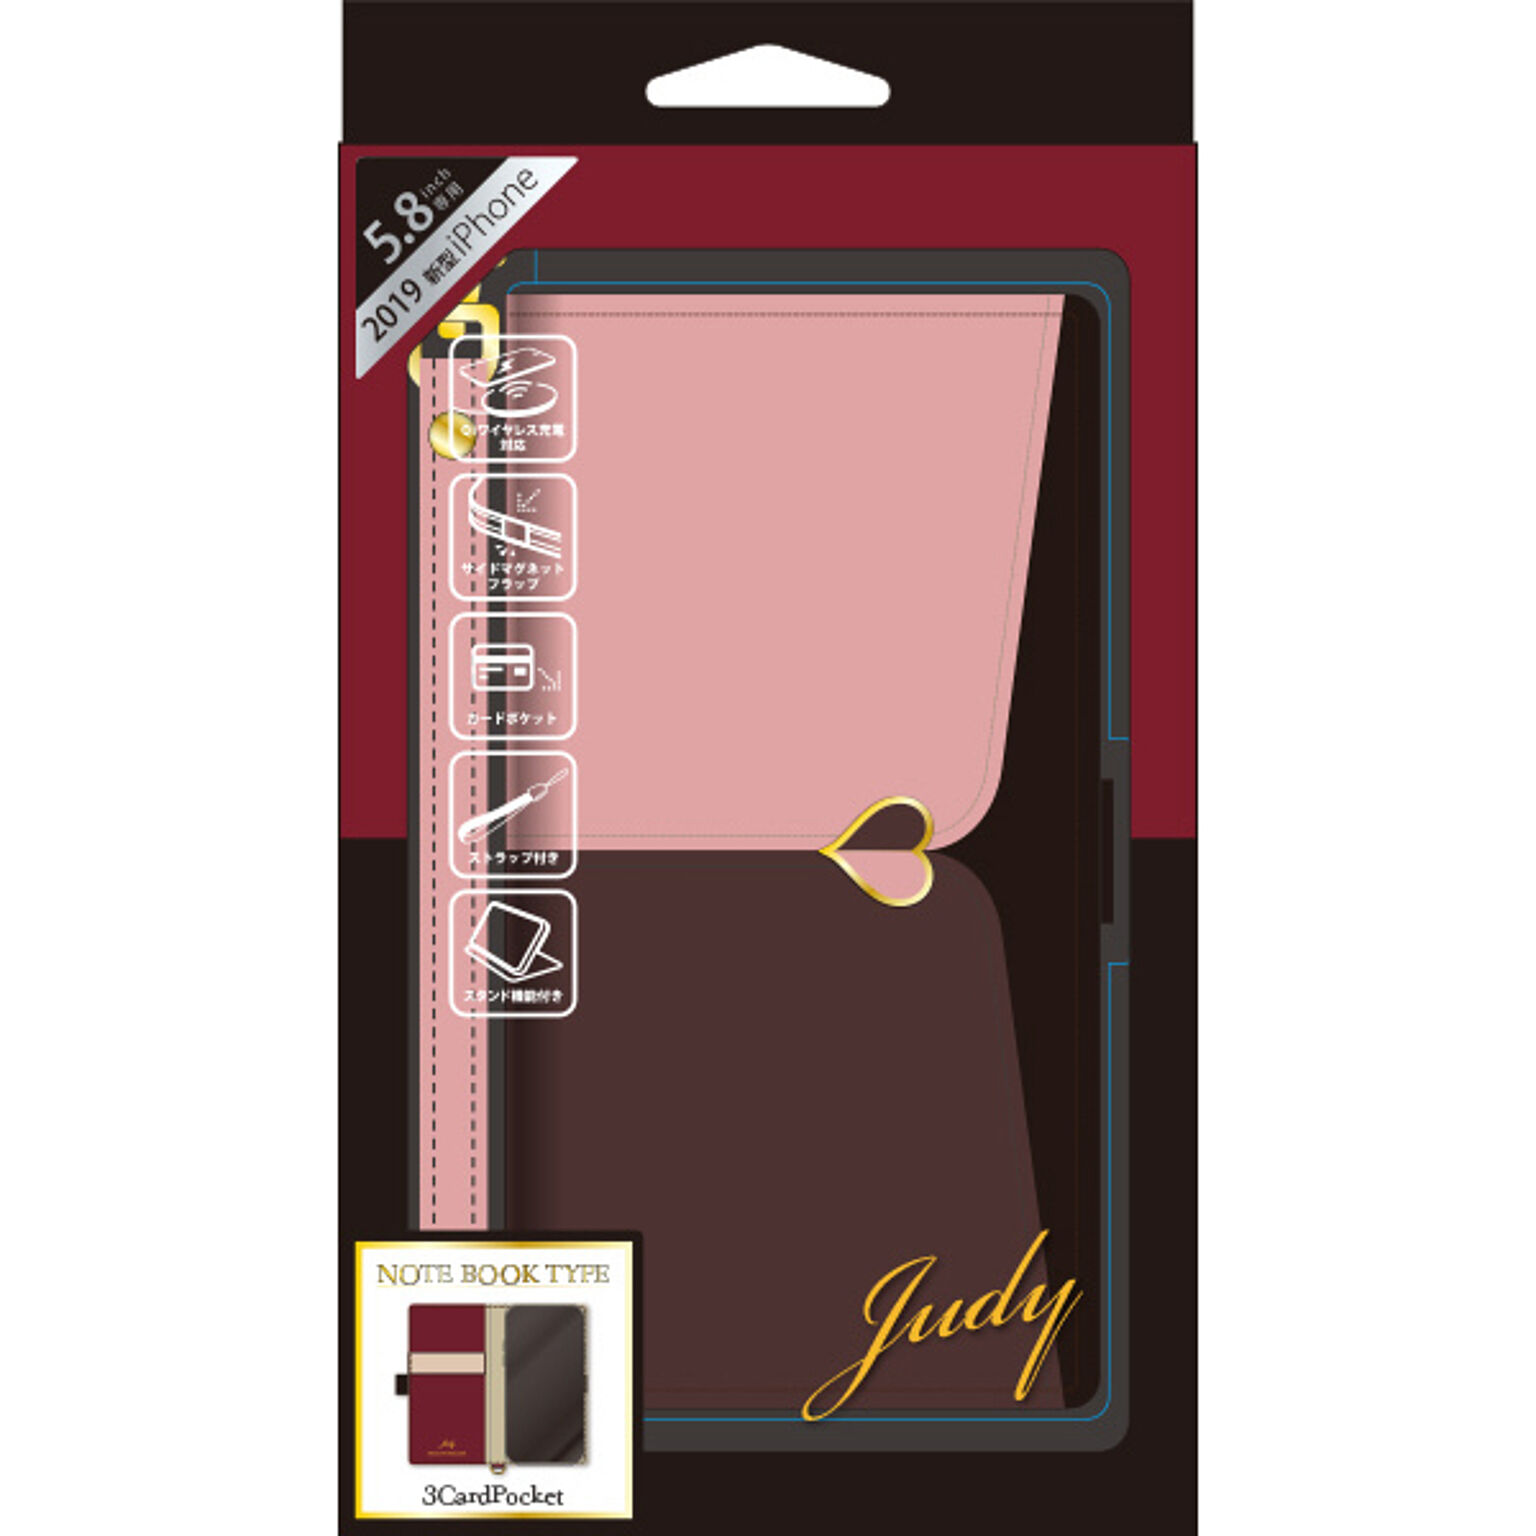 JUDY iPhone11Pro専用手帳型スマホケース iP19_58-JUDY02 ピンク×ブラウン